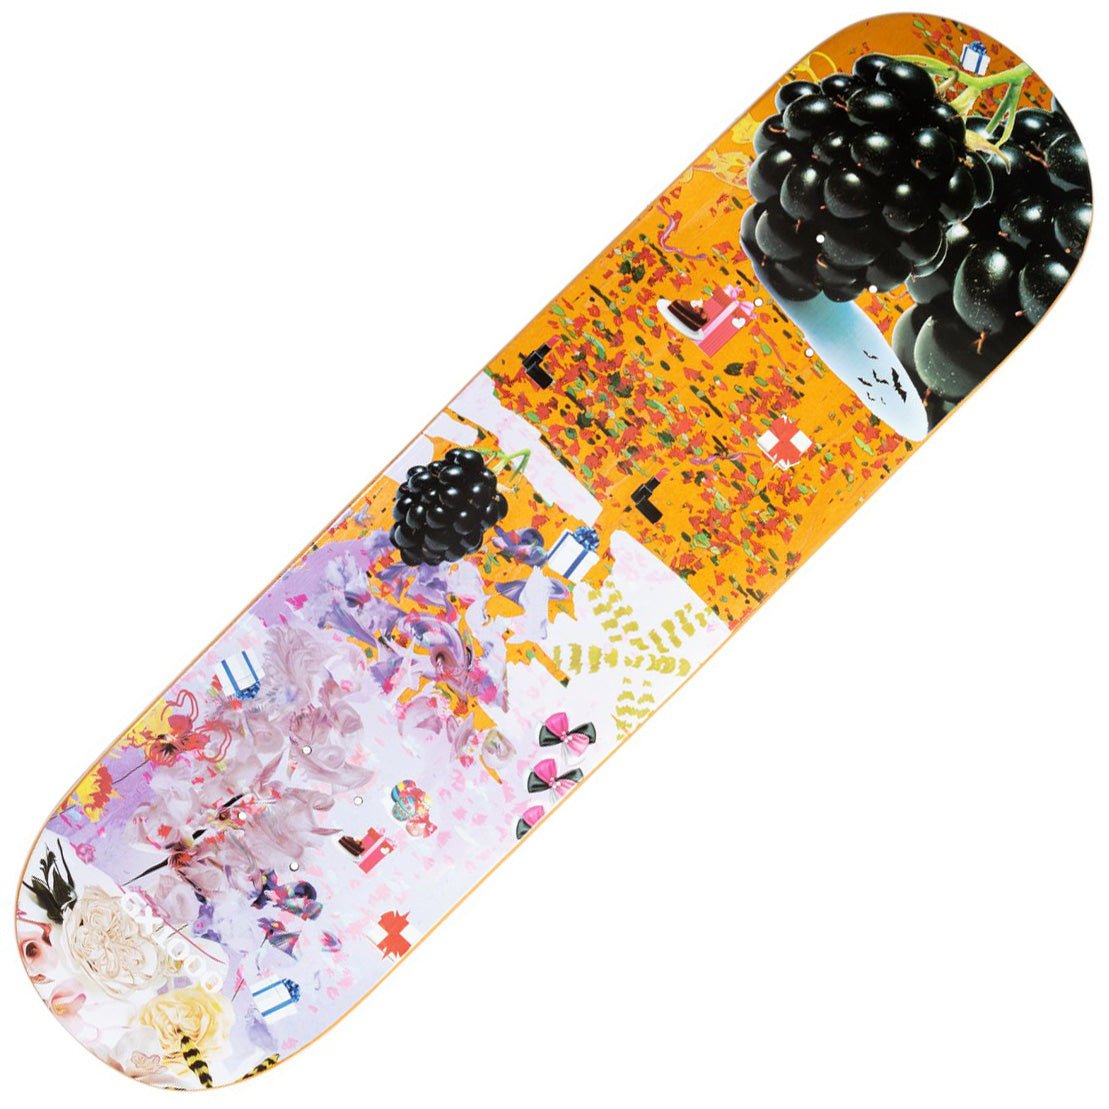 GX1000 Black Berry Tiger Lilly Deck (8.5) - Tiki Room Skateboards - 1